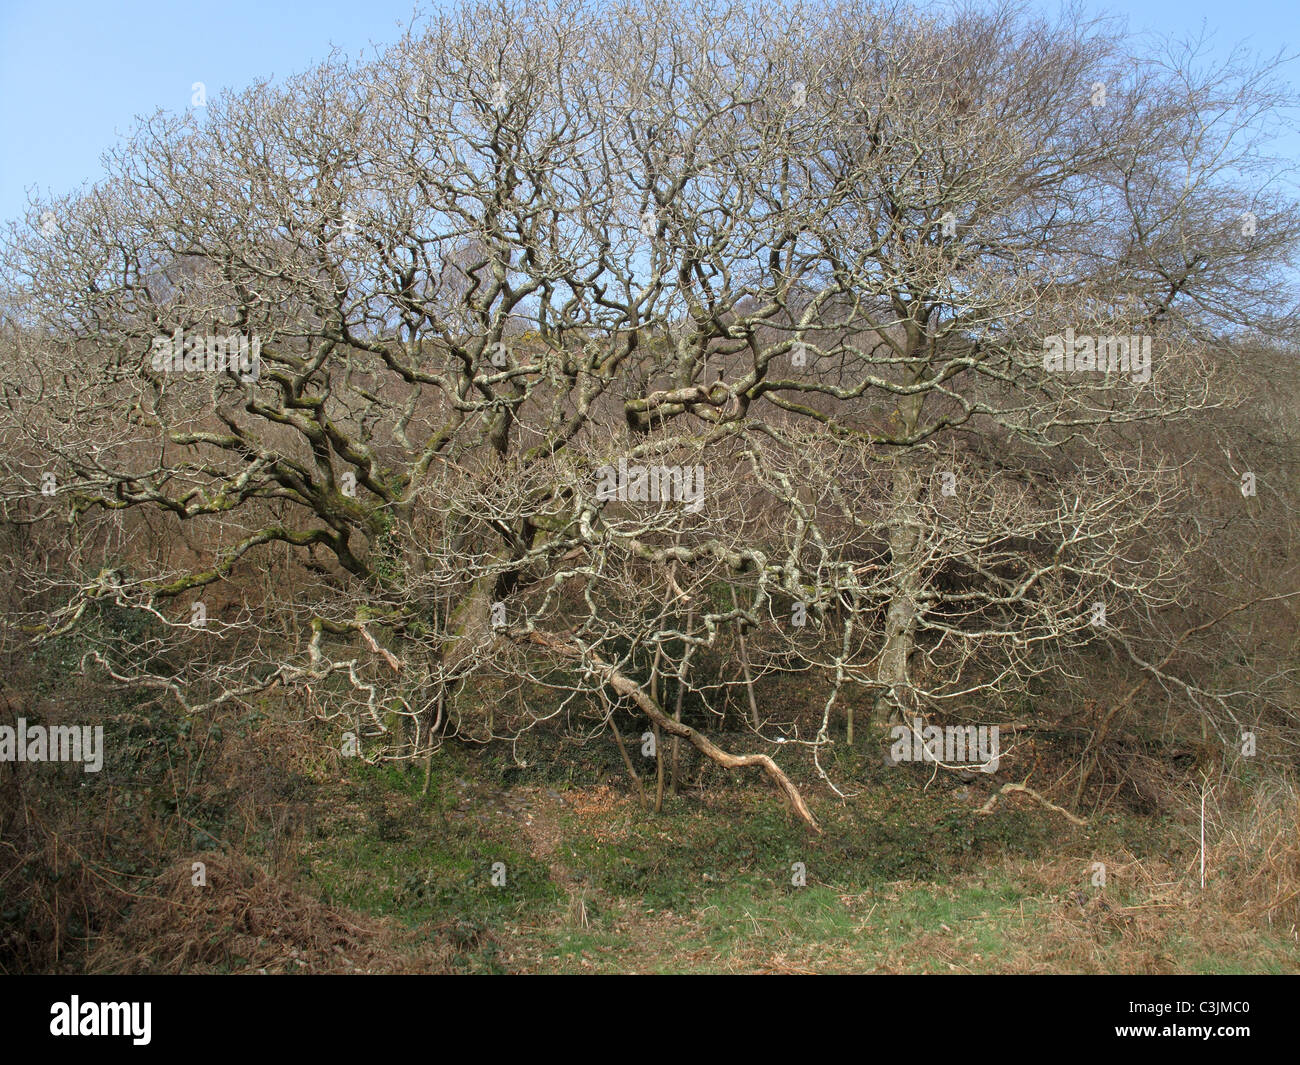 Quercia europea (Quercus robur) sfrondato vecchio albero con il lichen coperto i rami in primavera Foto Stock